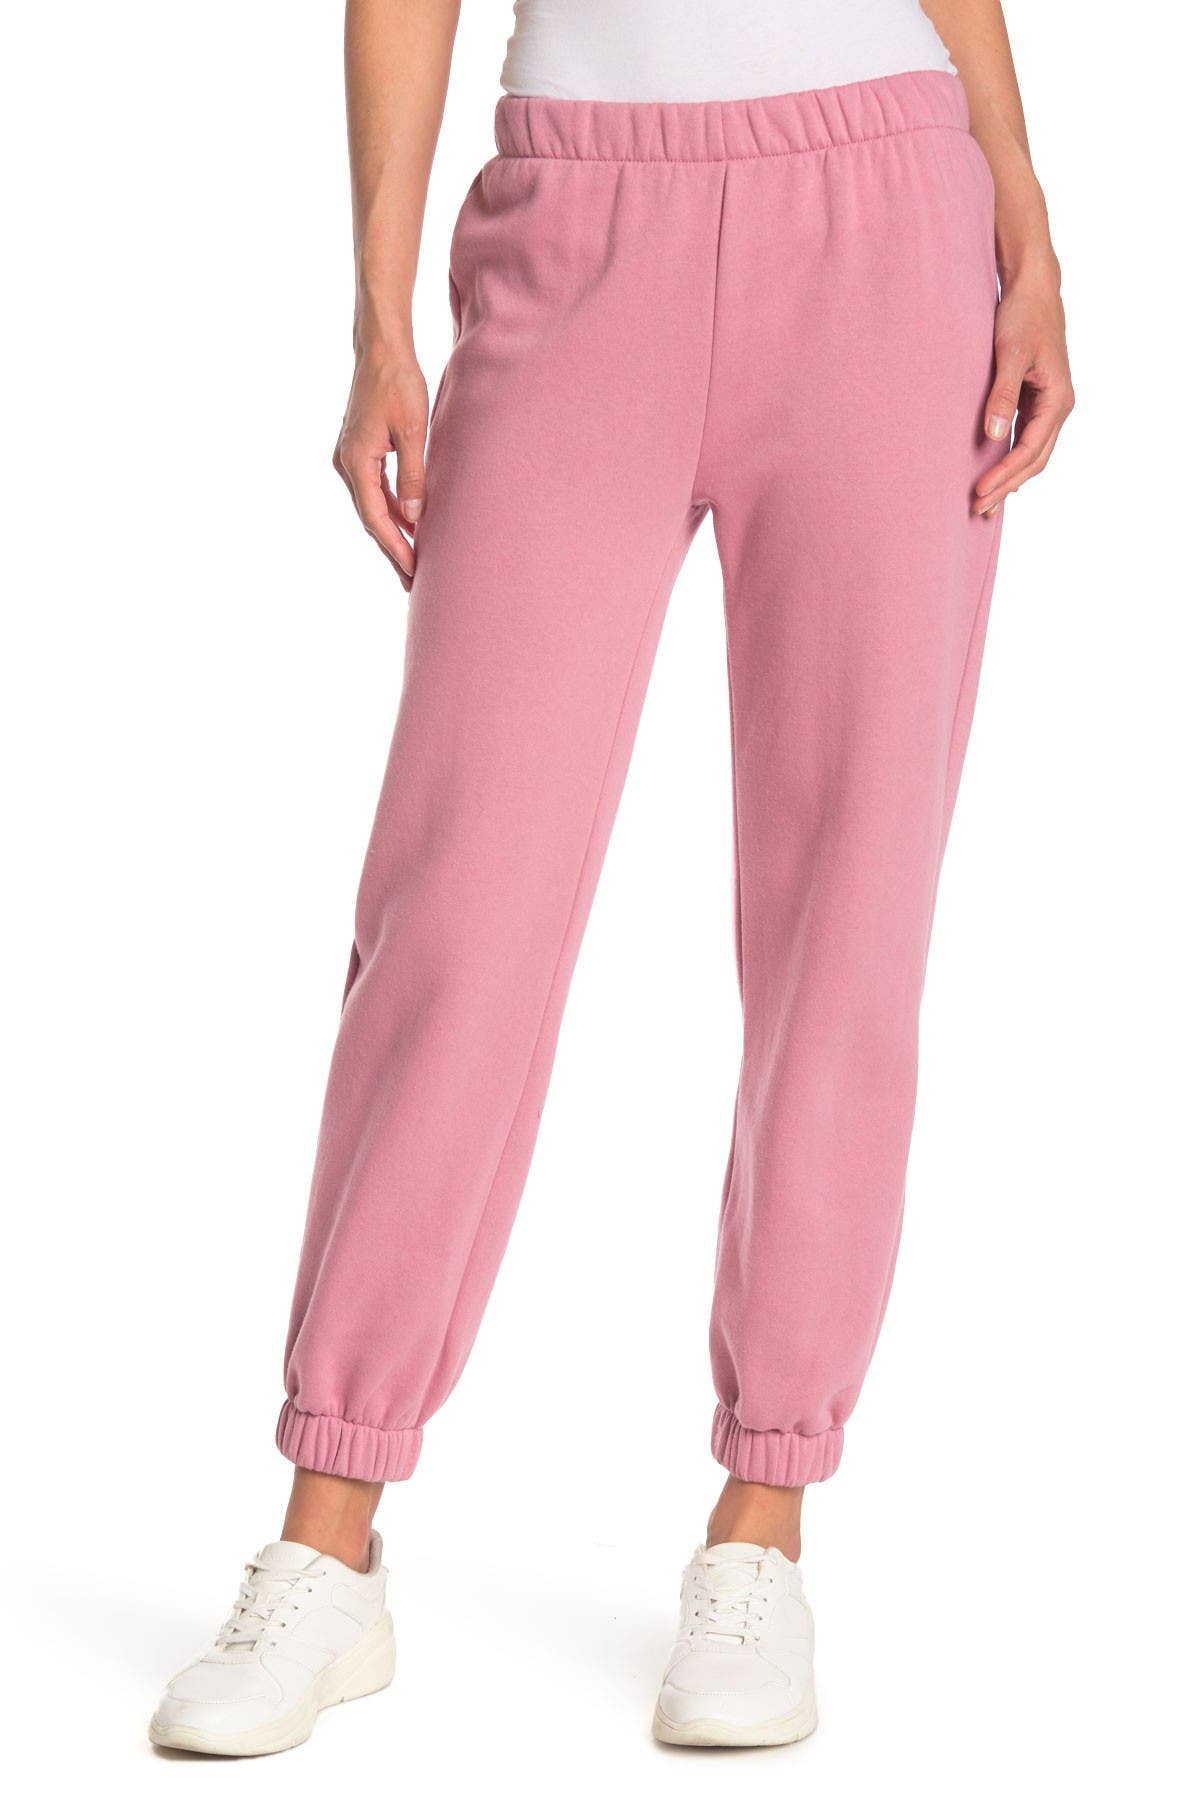 Abound Fleece Sweatpants In Medium Pink